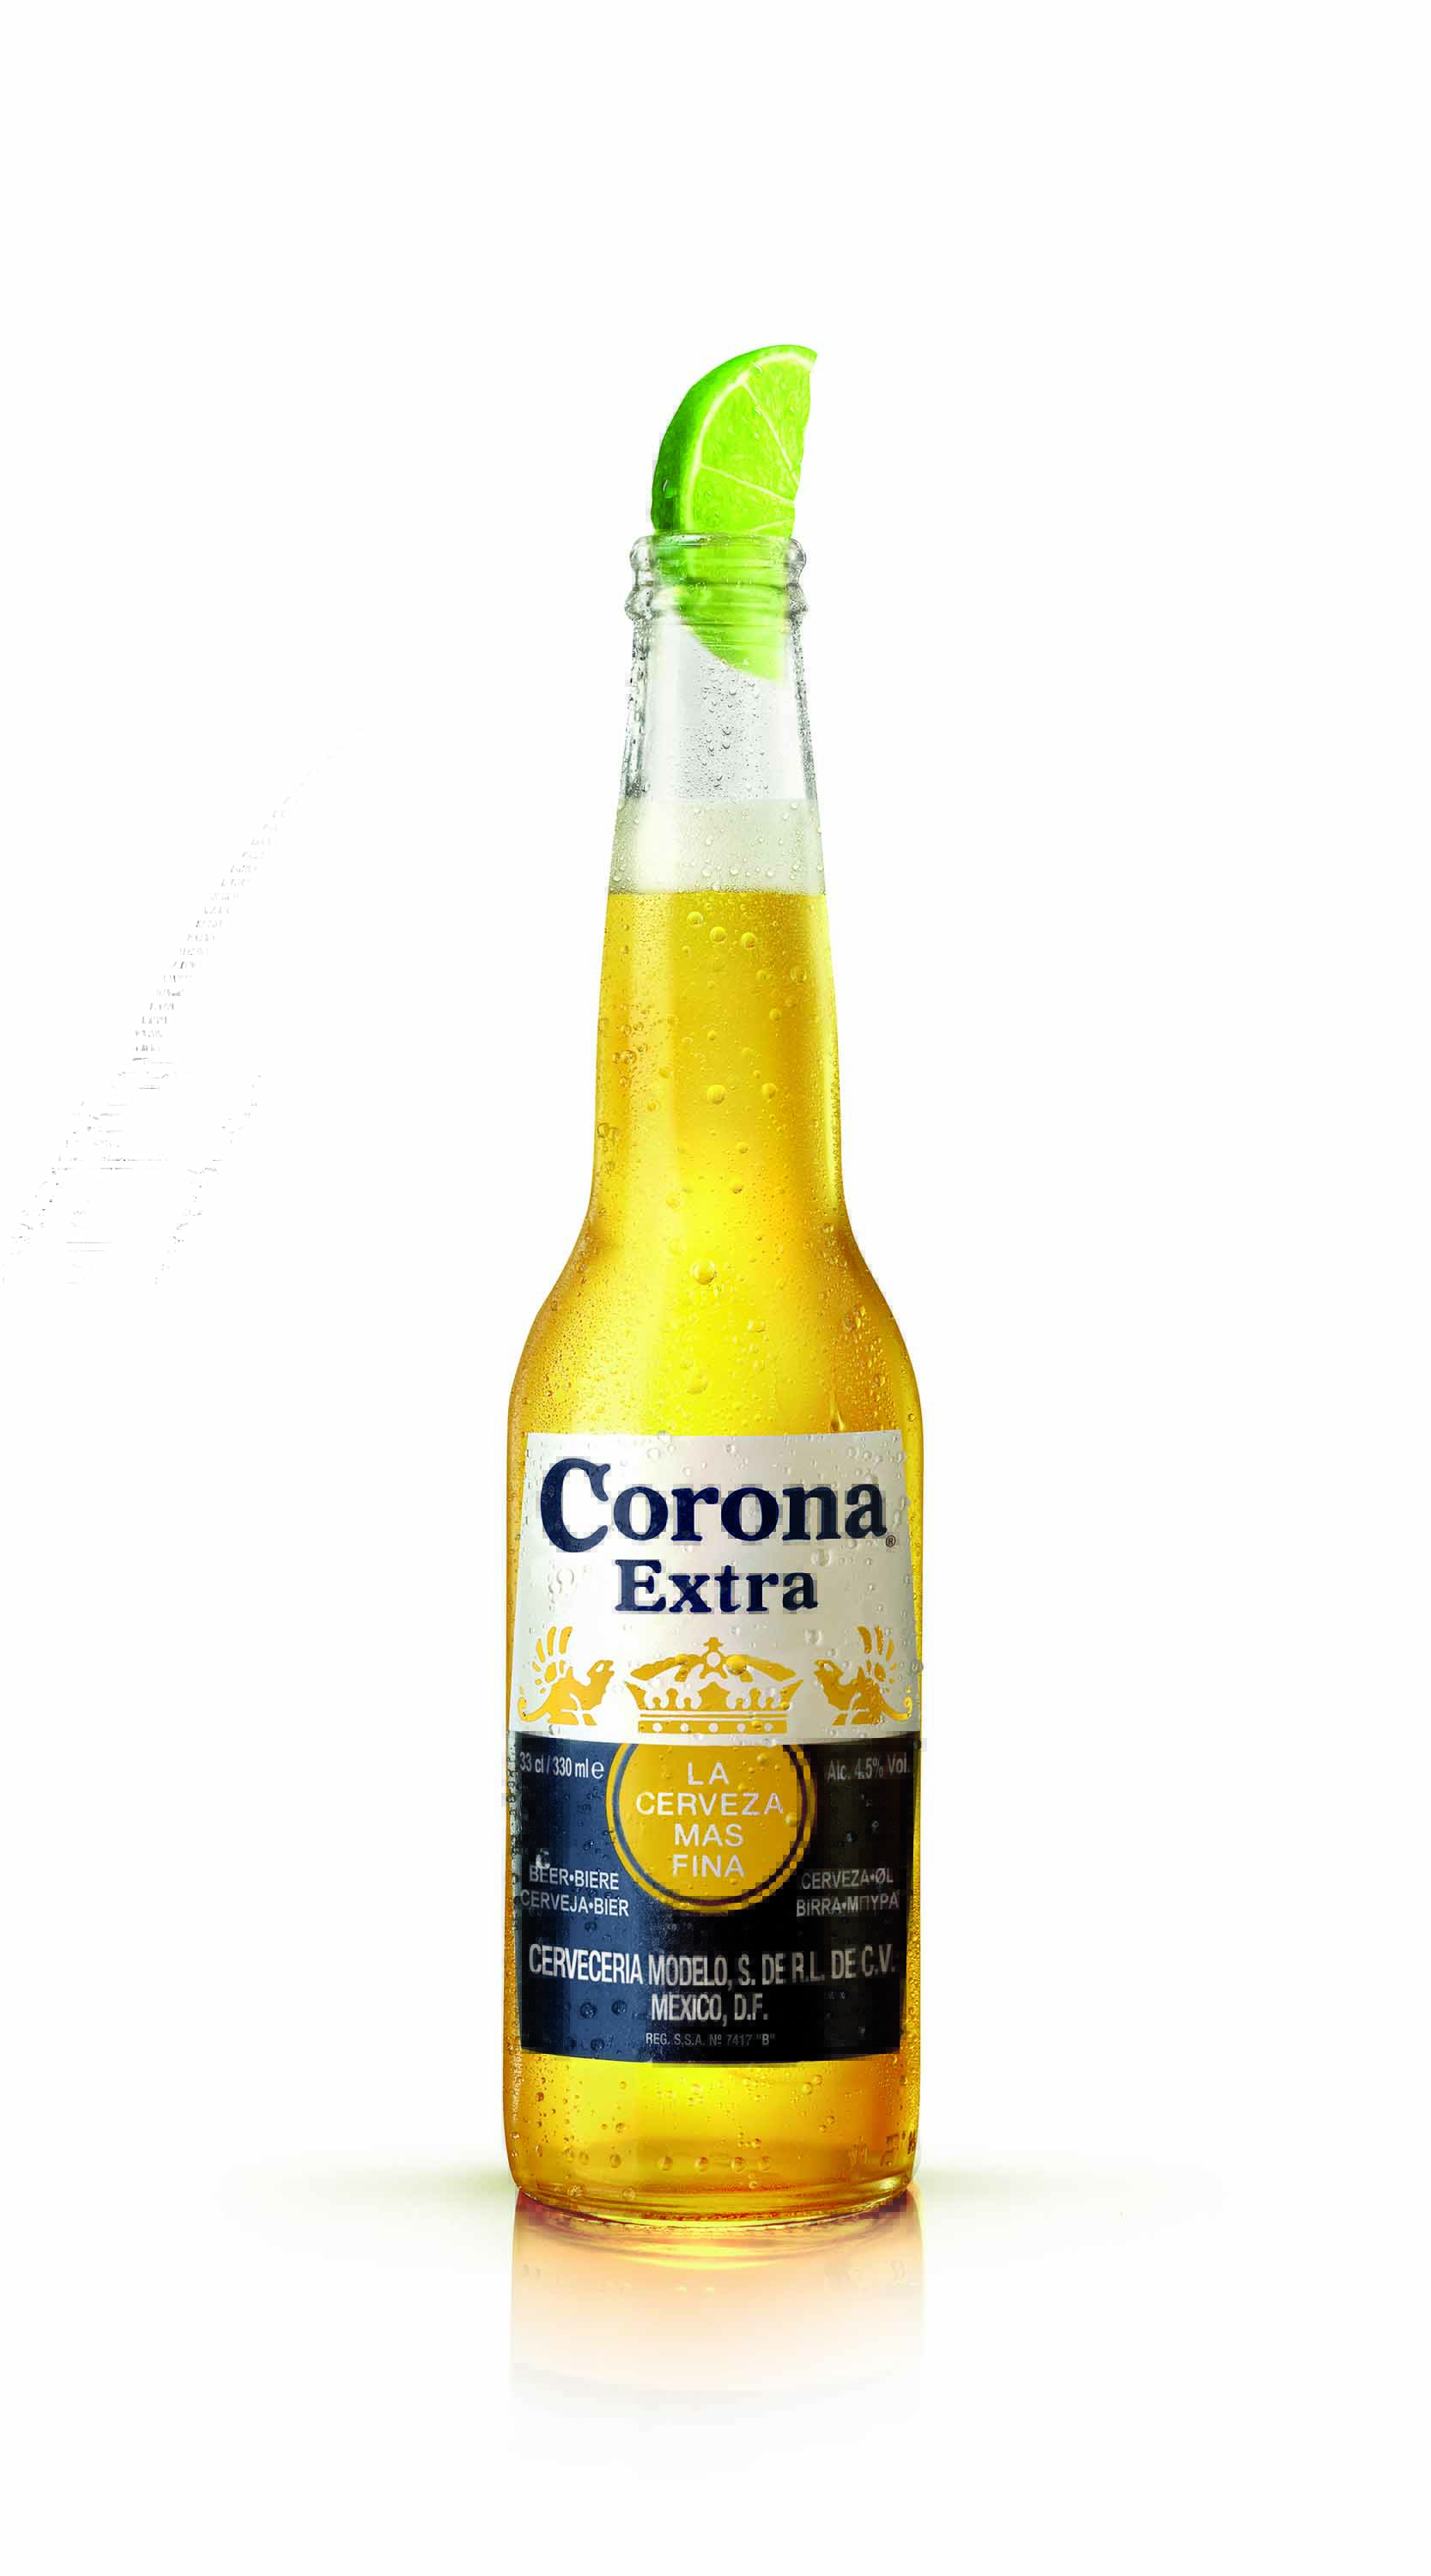 Corona Bottle Image